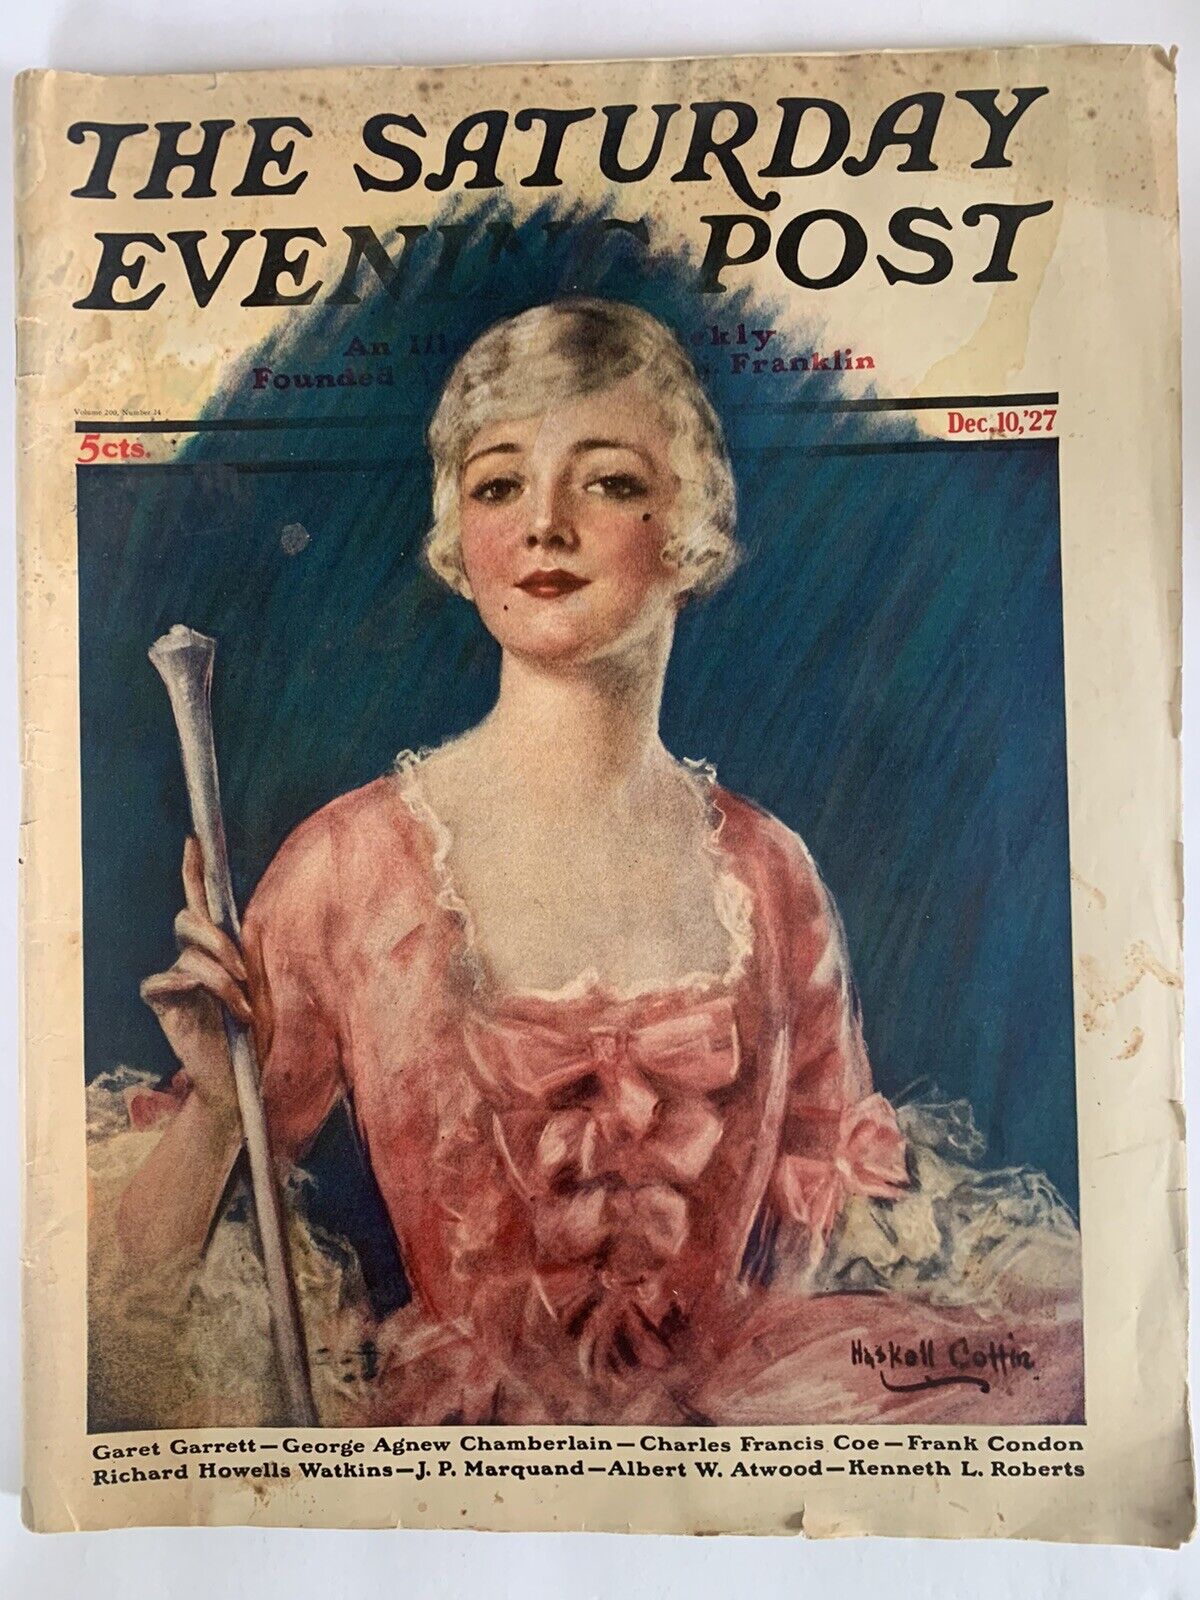 Vintage-Saturday Evening Post-Dec. 10, 1927, vintage ads, Fashion, Color prints